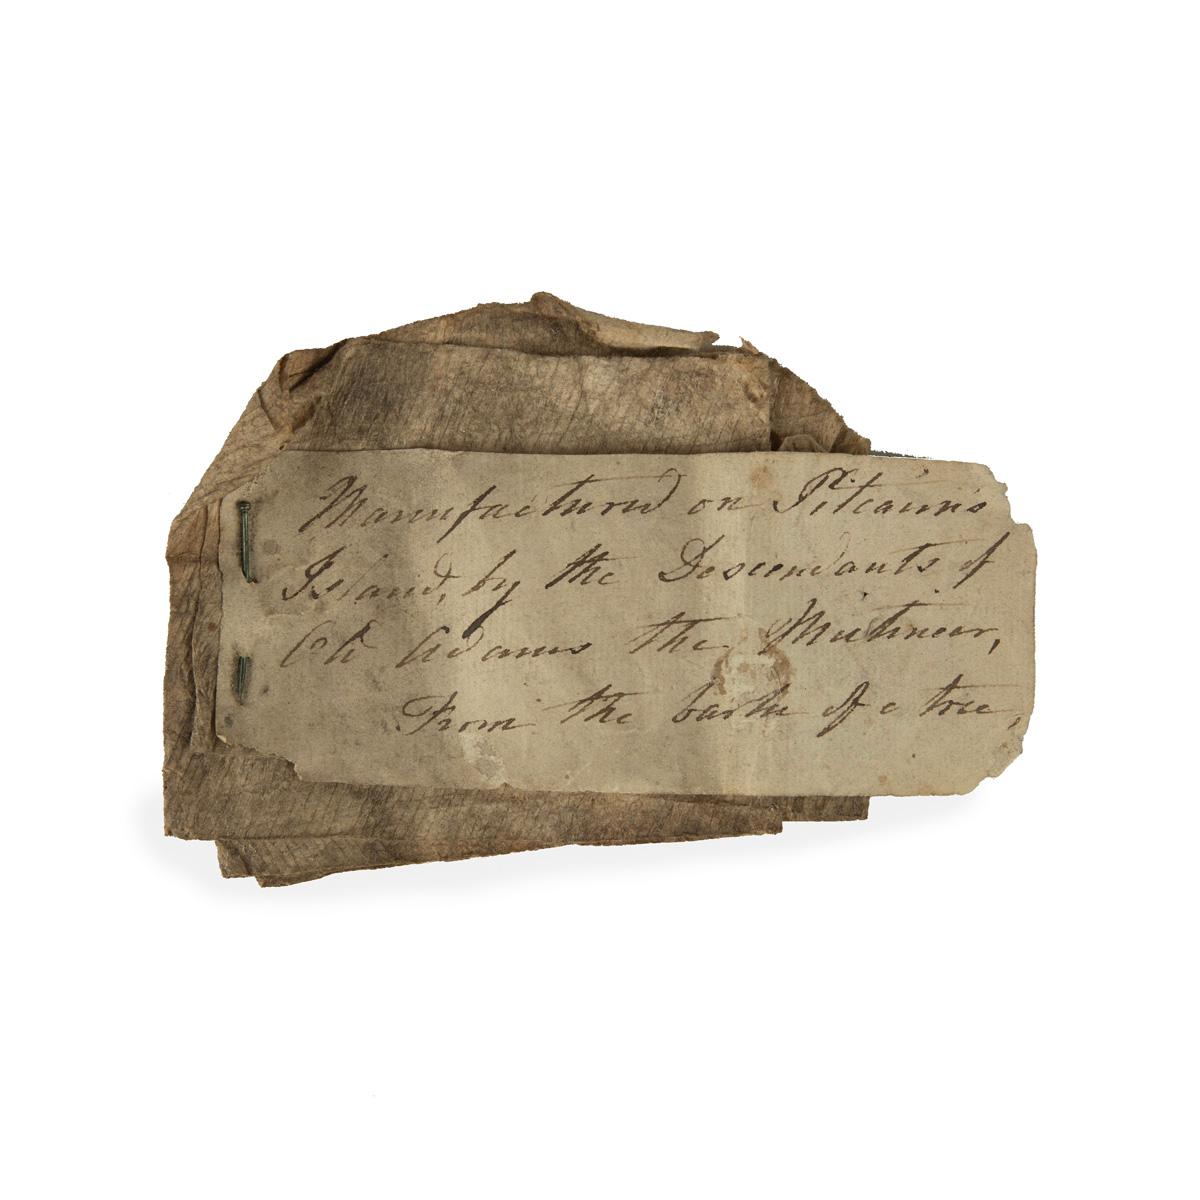 Une relique de la famille du mutin du Bounty John Adams : Un morceau exceptionnellement rare et documenté de tissu d'écorce des îles Pitcairn, avec un fragment de papier épinglé indiquant 